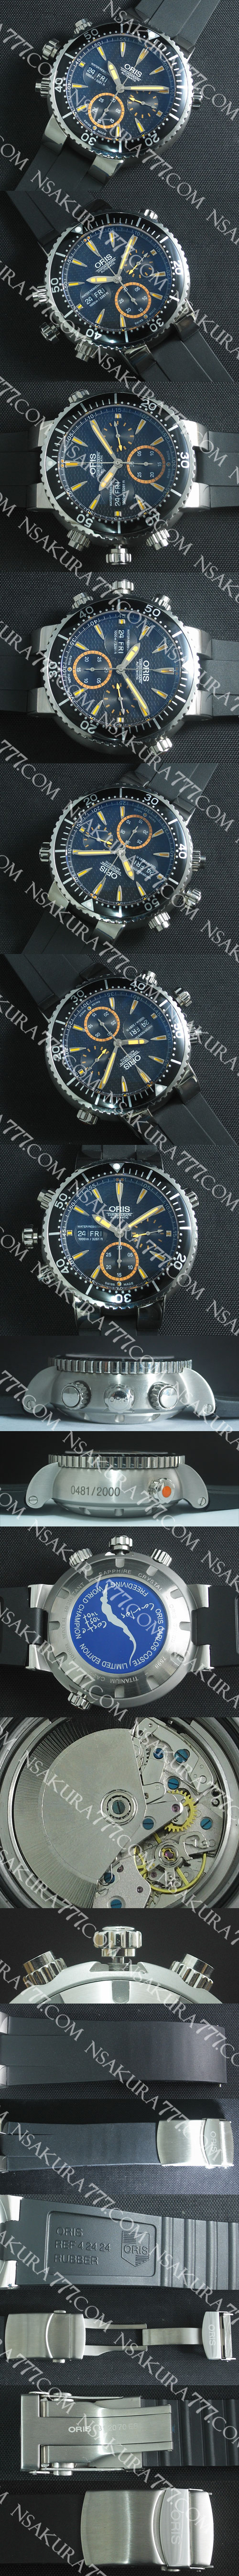 レプリカ時計オリス カルロス コステ クロノグラフ Asian 7750搭載 - ウインドウを閉じる